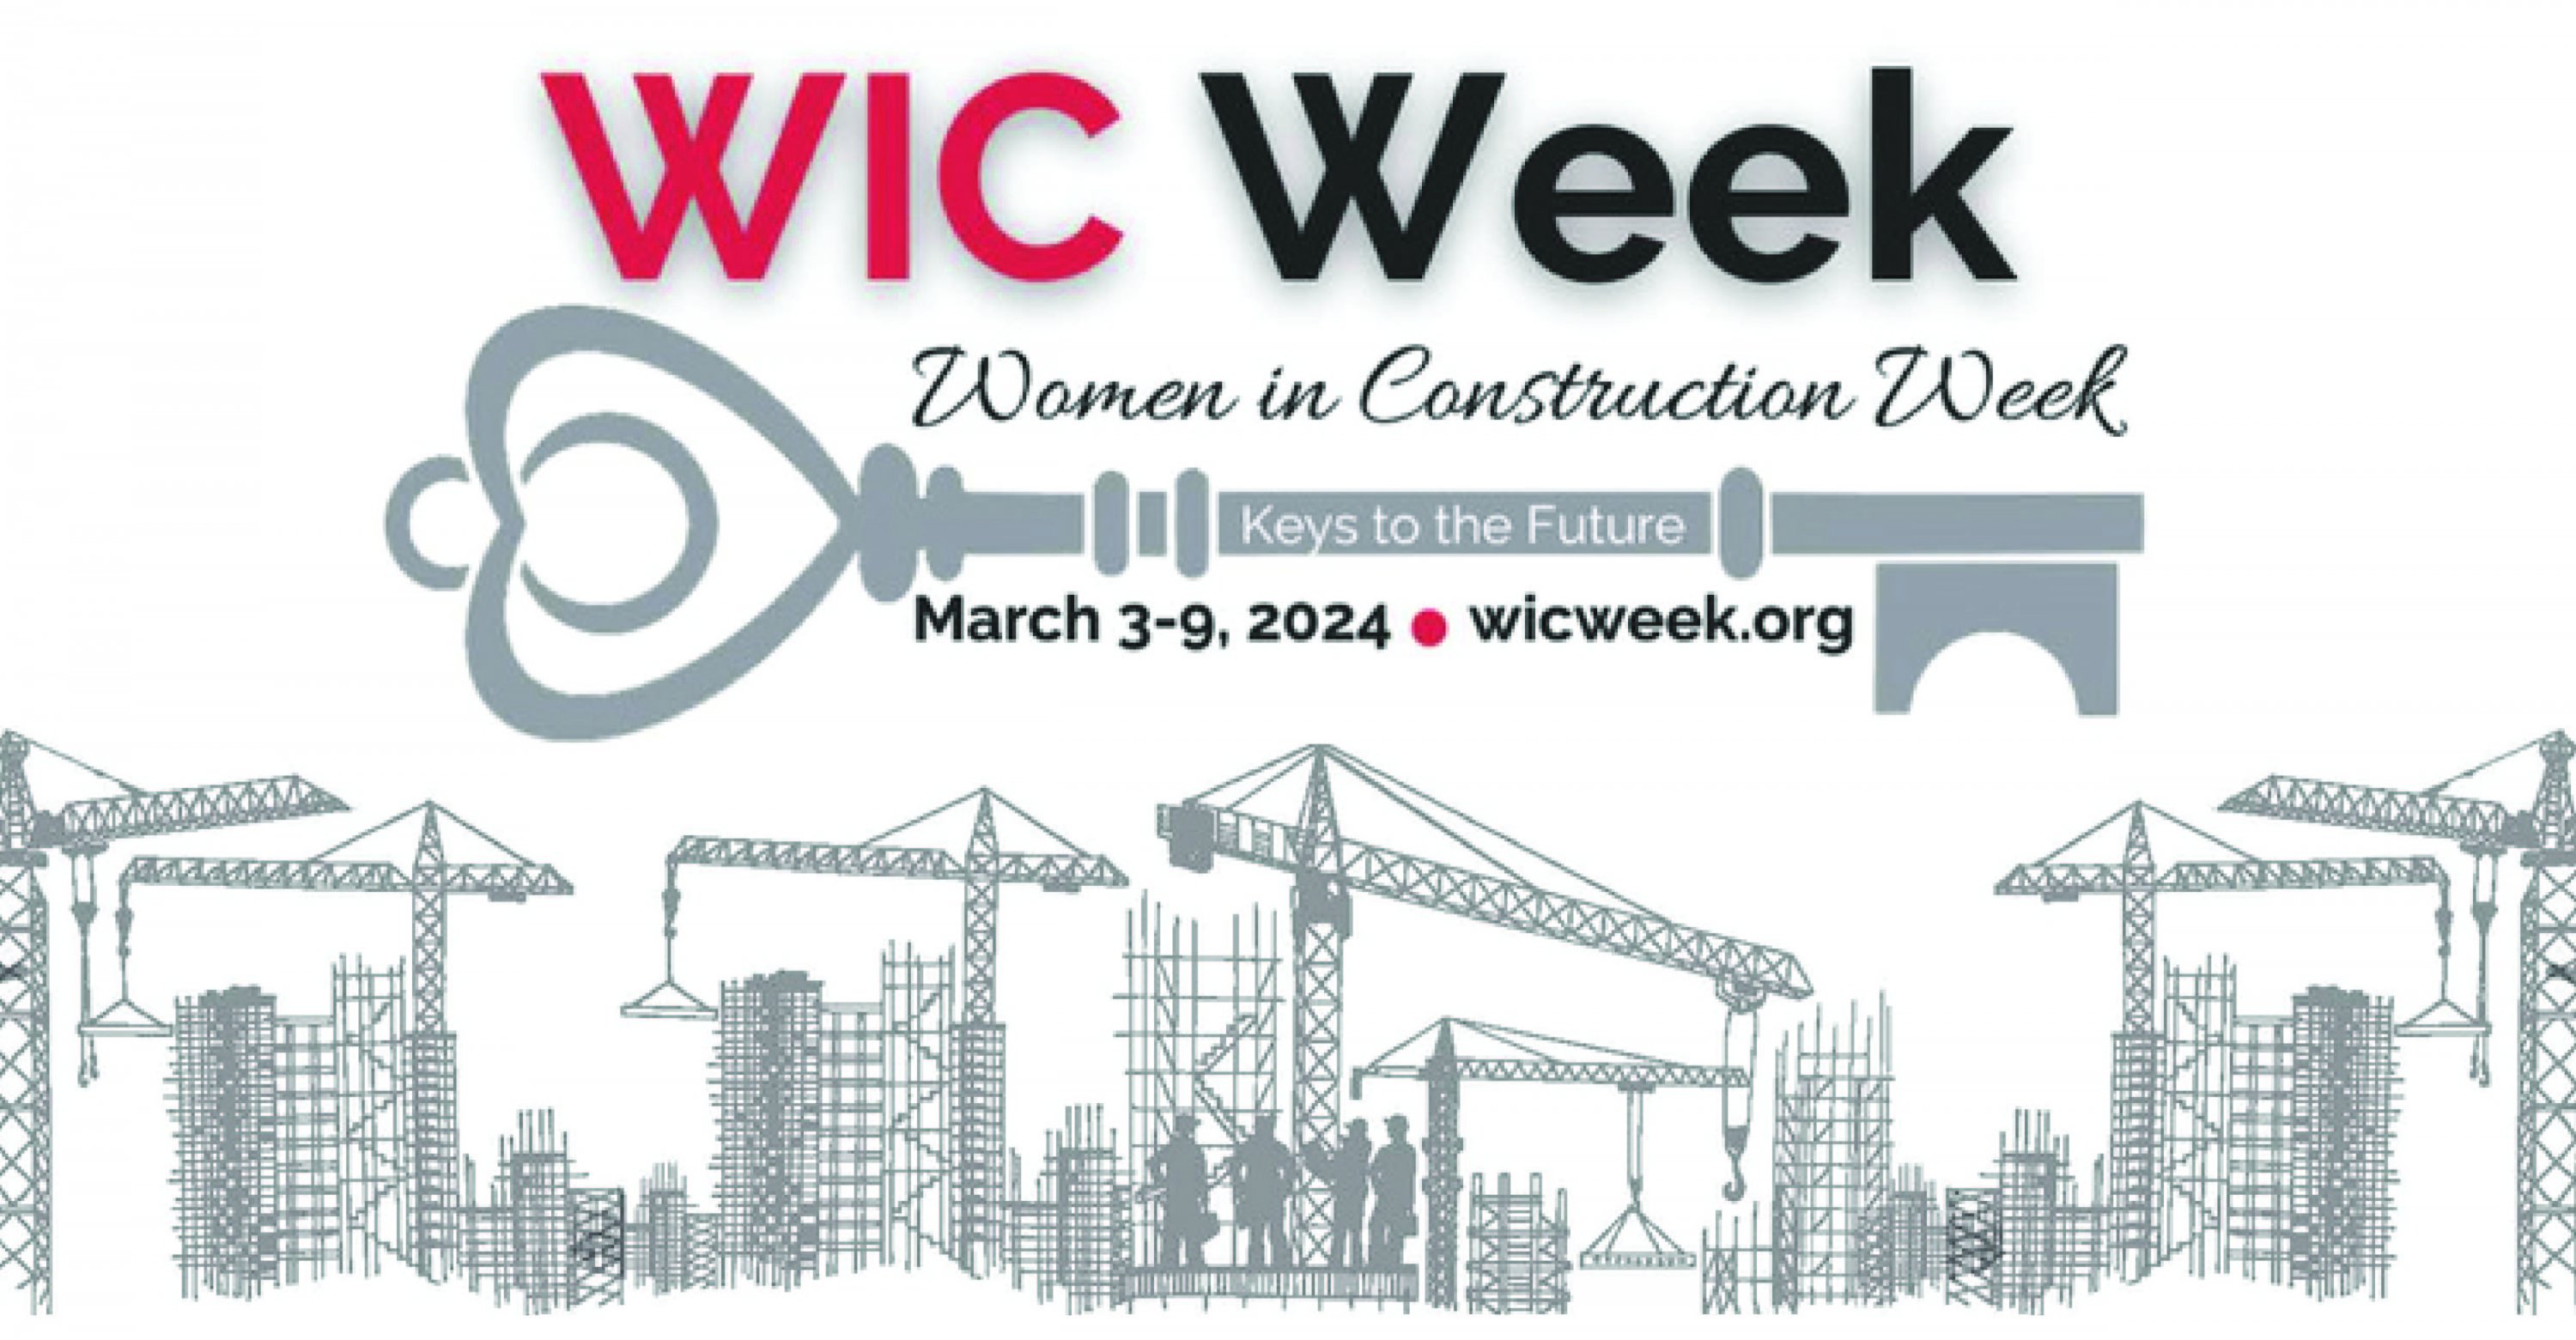 Celebrating Women in Construction Week 2024 